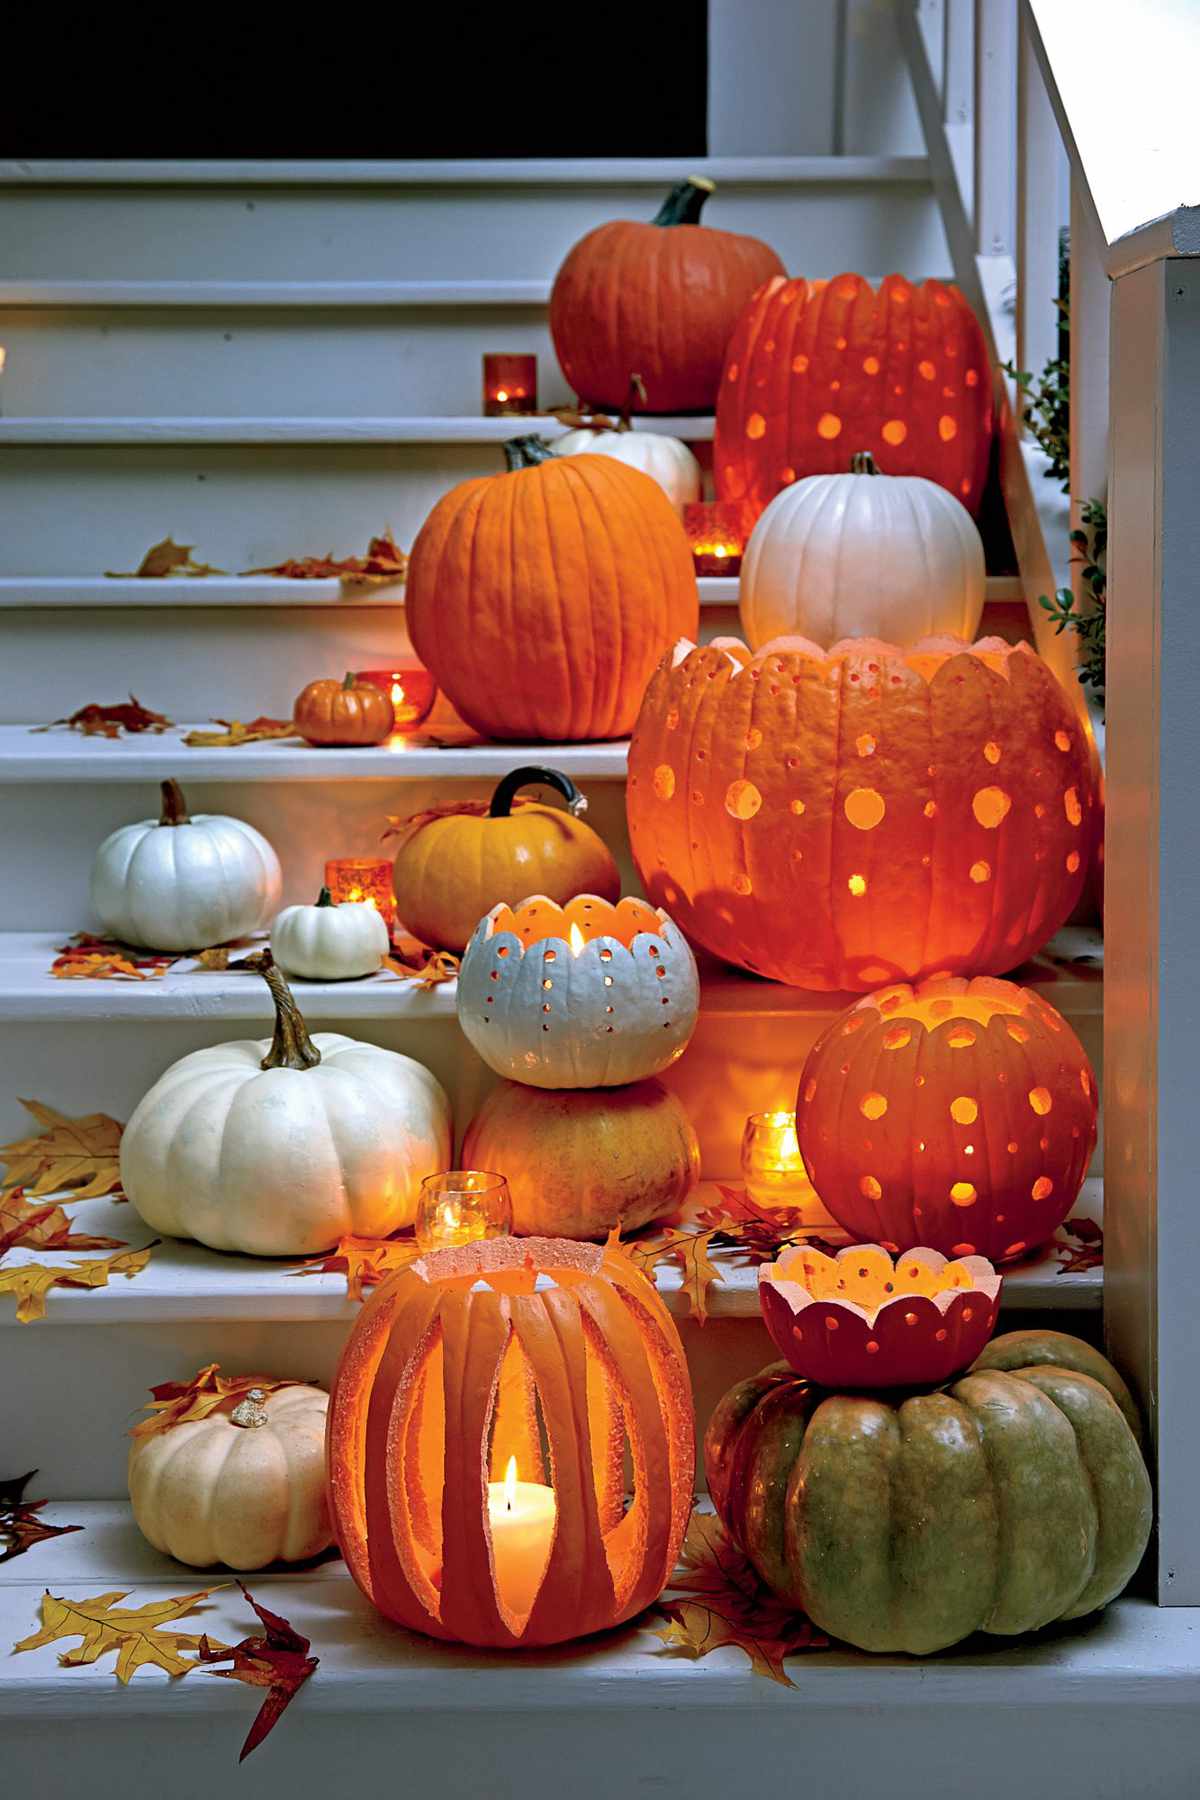 Carve a Patterned Pumpkin